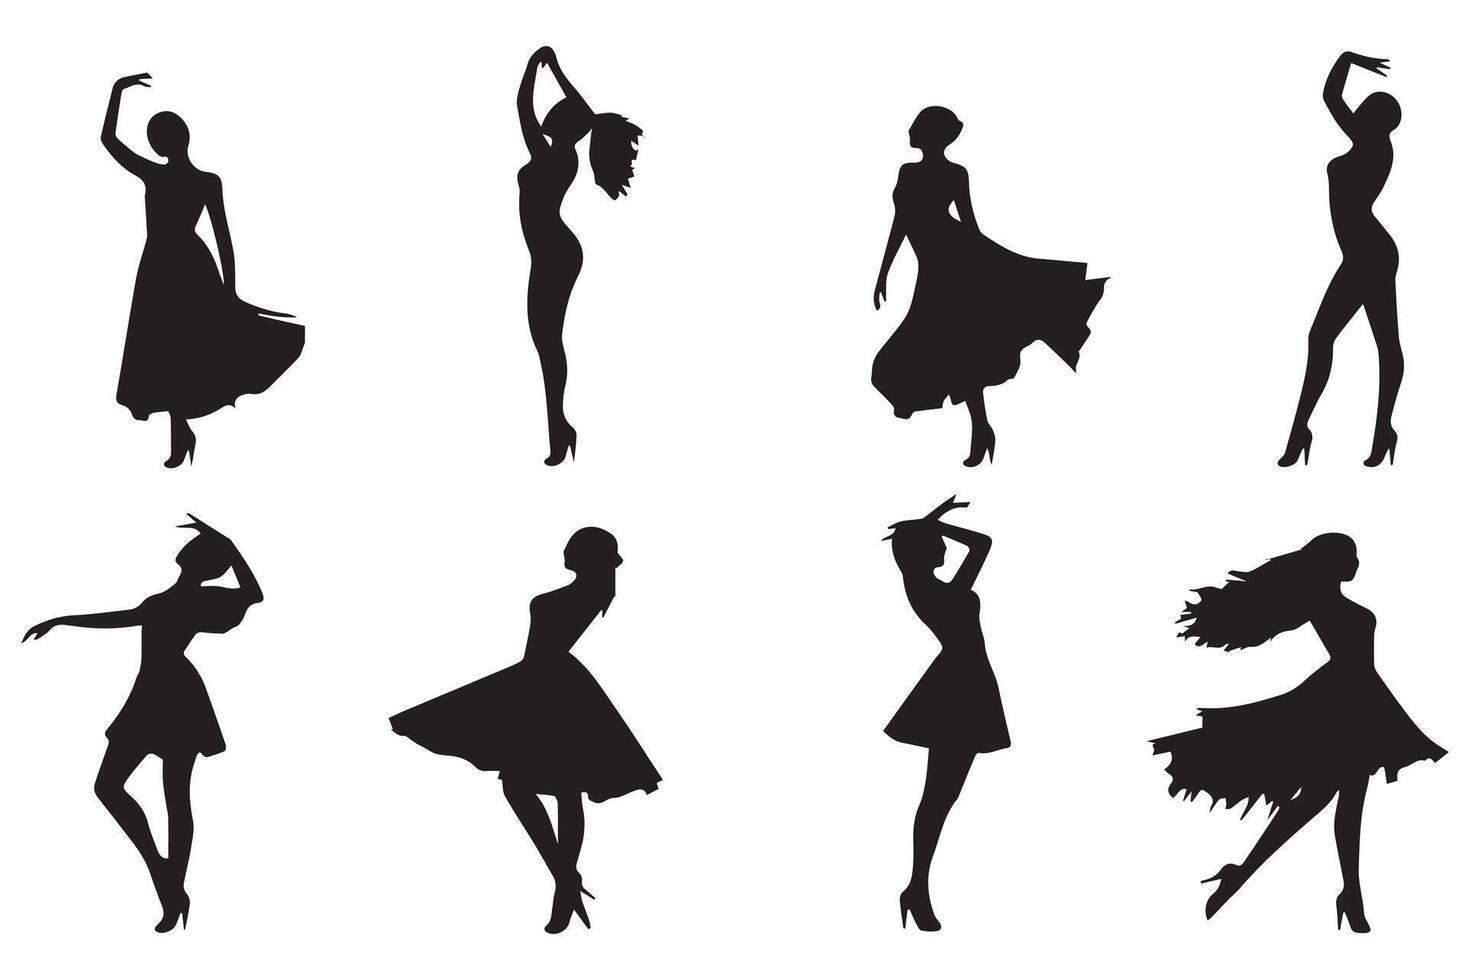 Silhouetten von Tanzen Mädchen Gruppe vektor